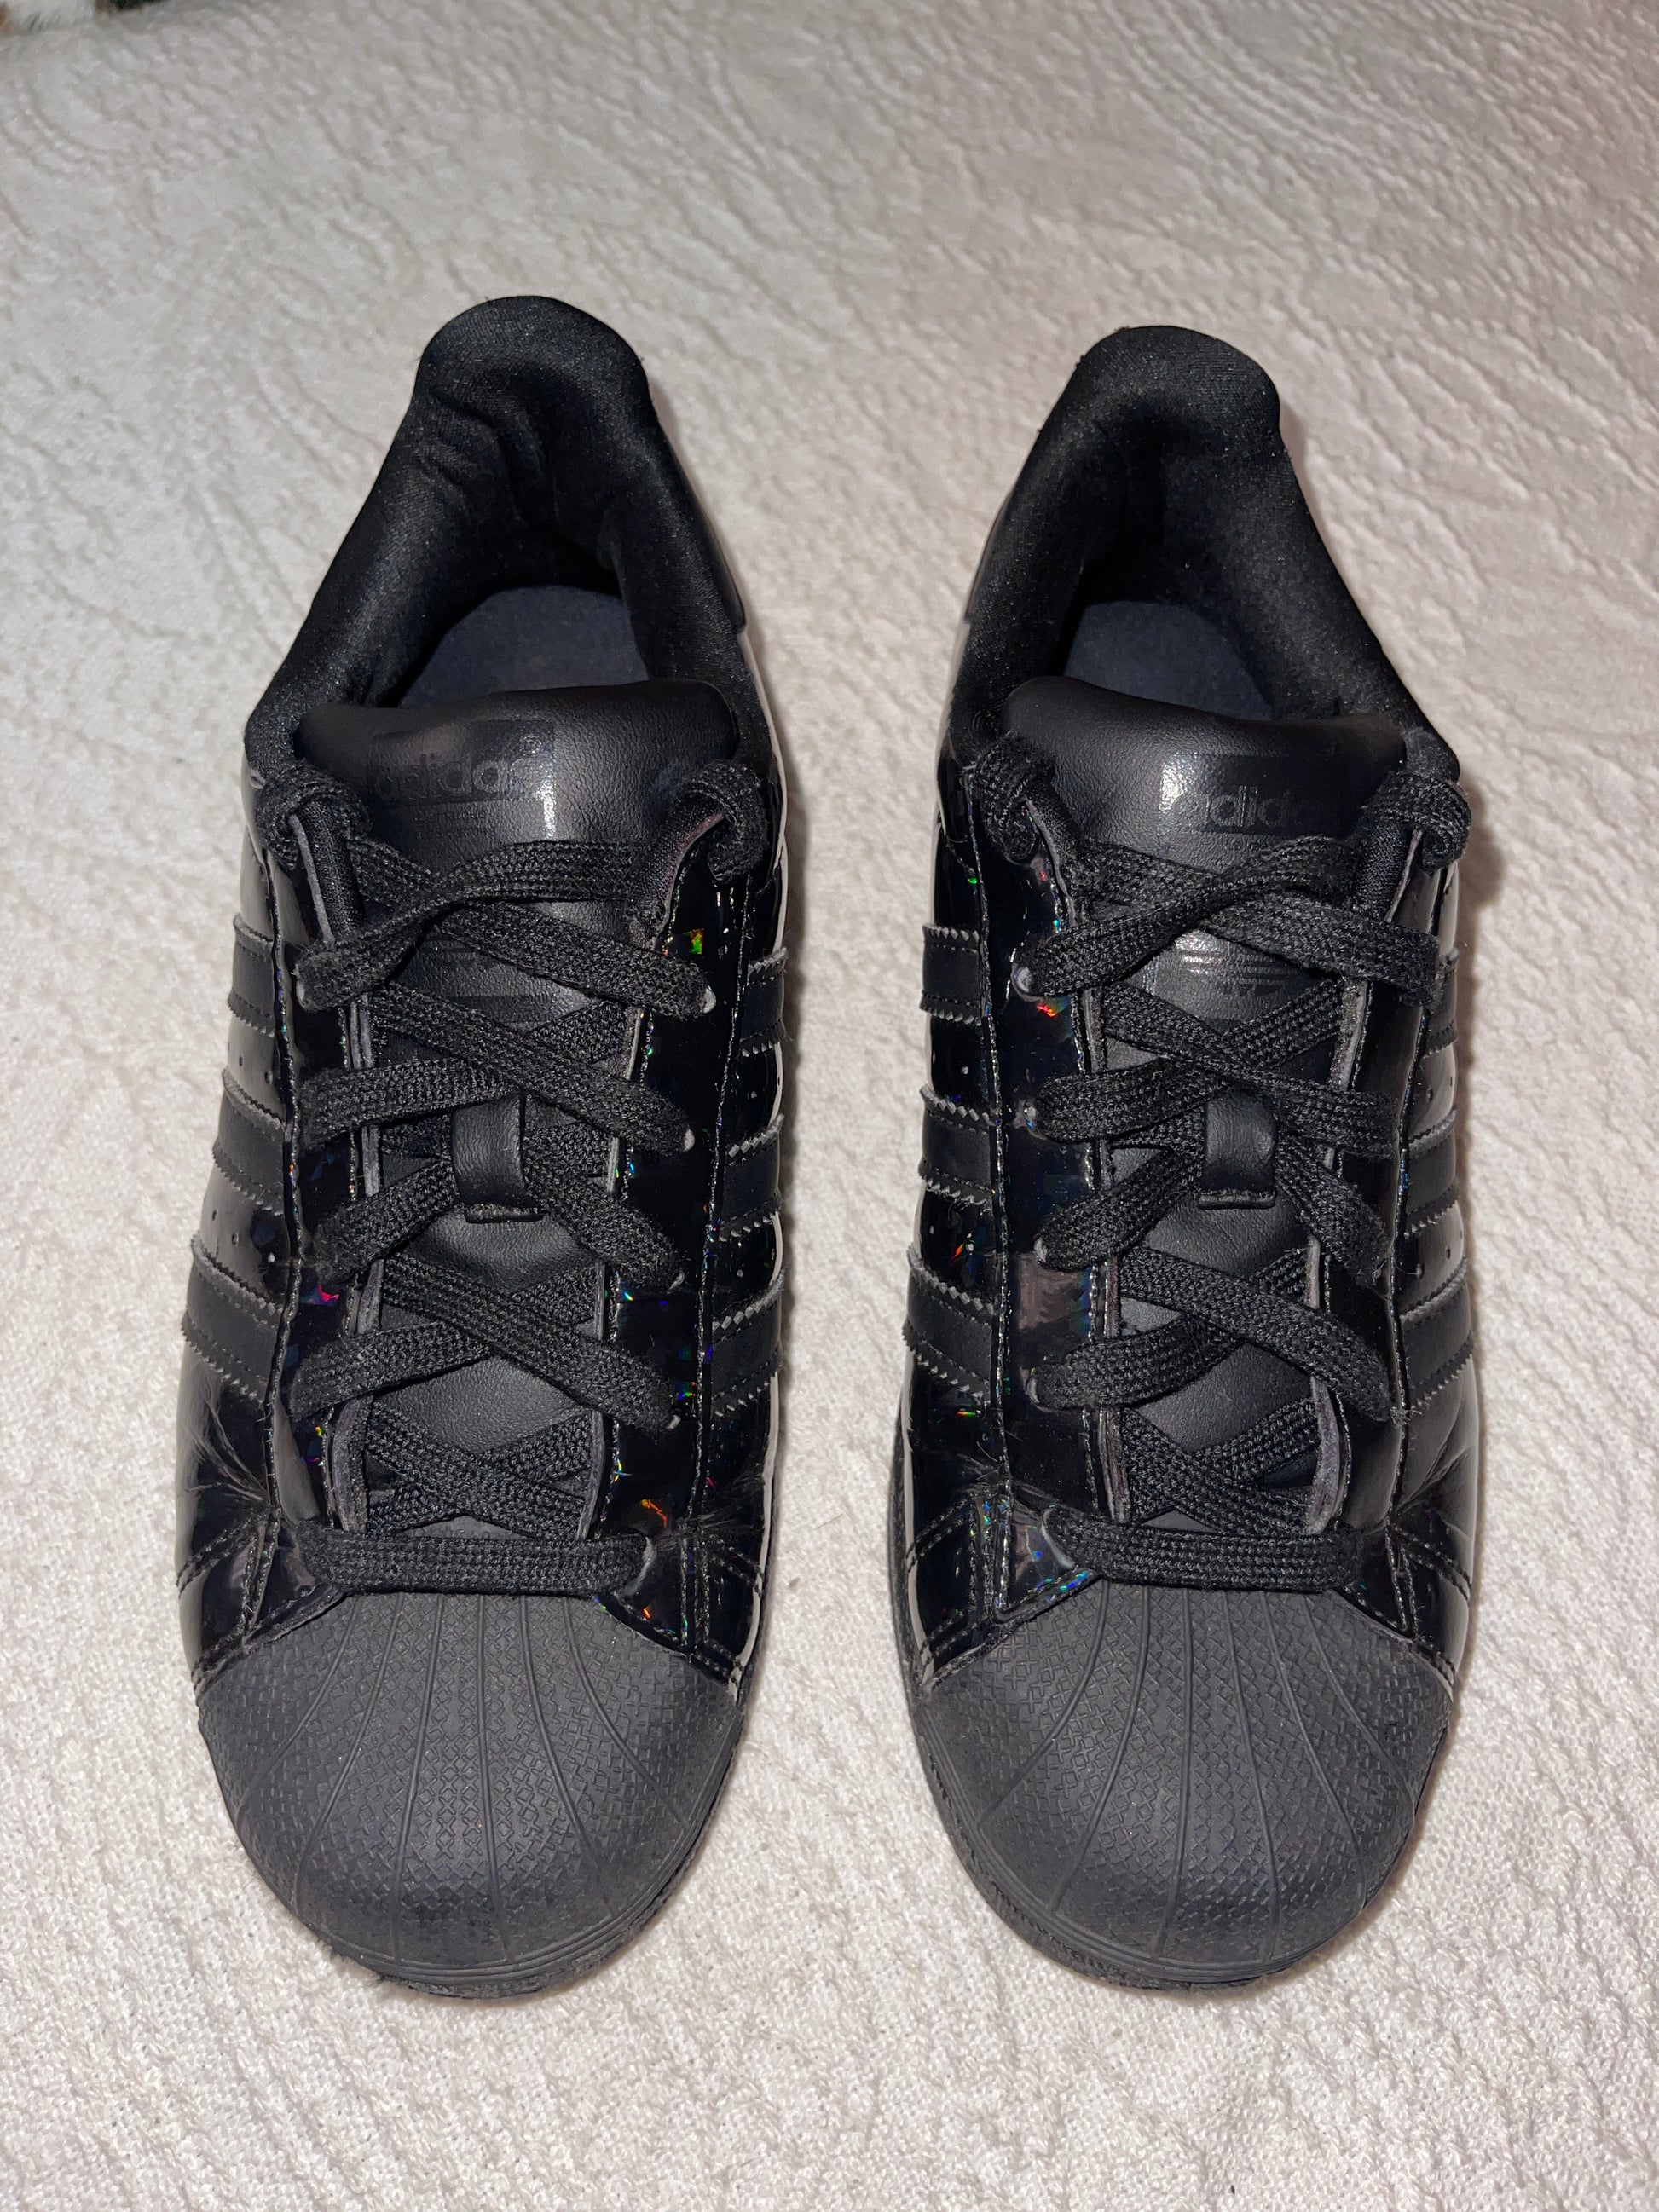 Adidas Superstar pantofi sport casual negri cu sclipici mărimea 36.5